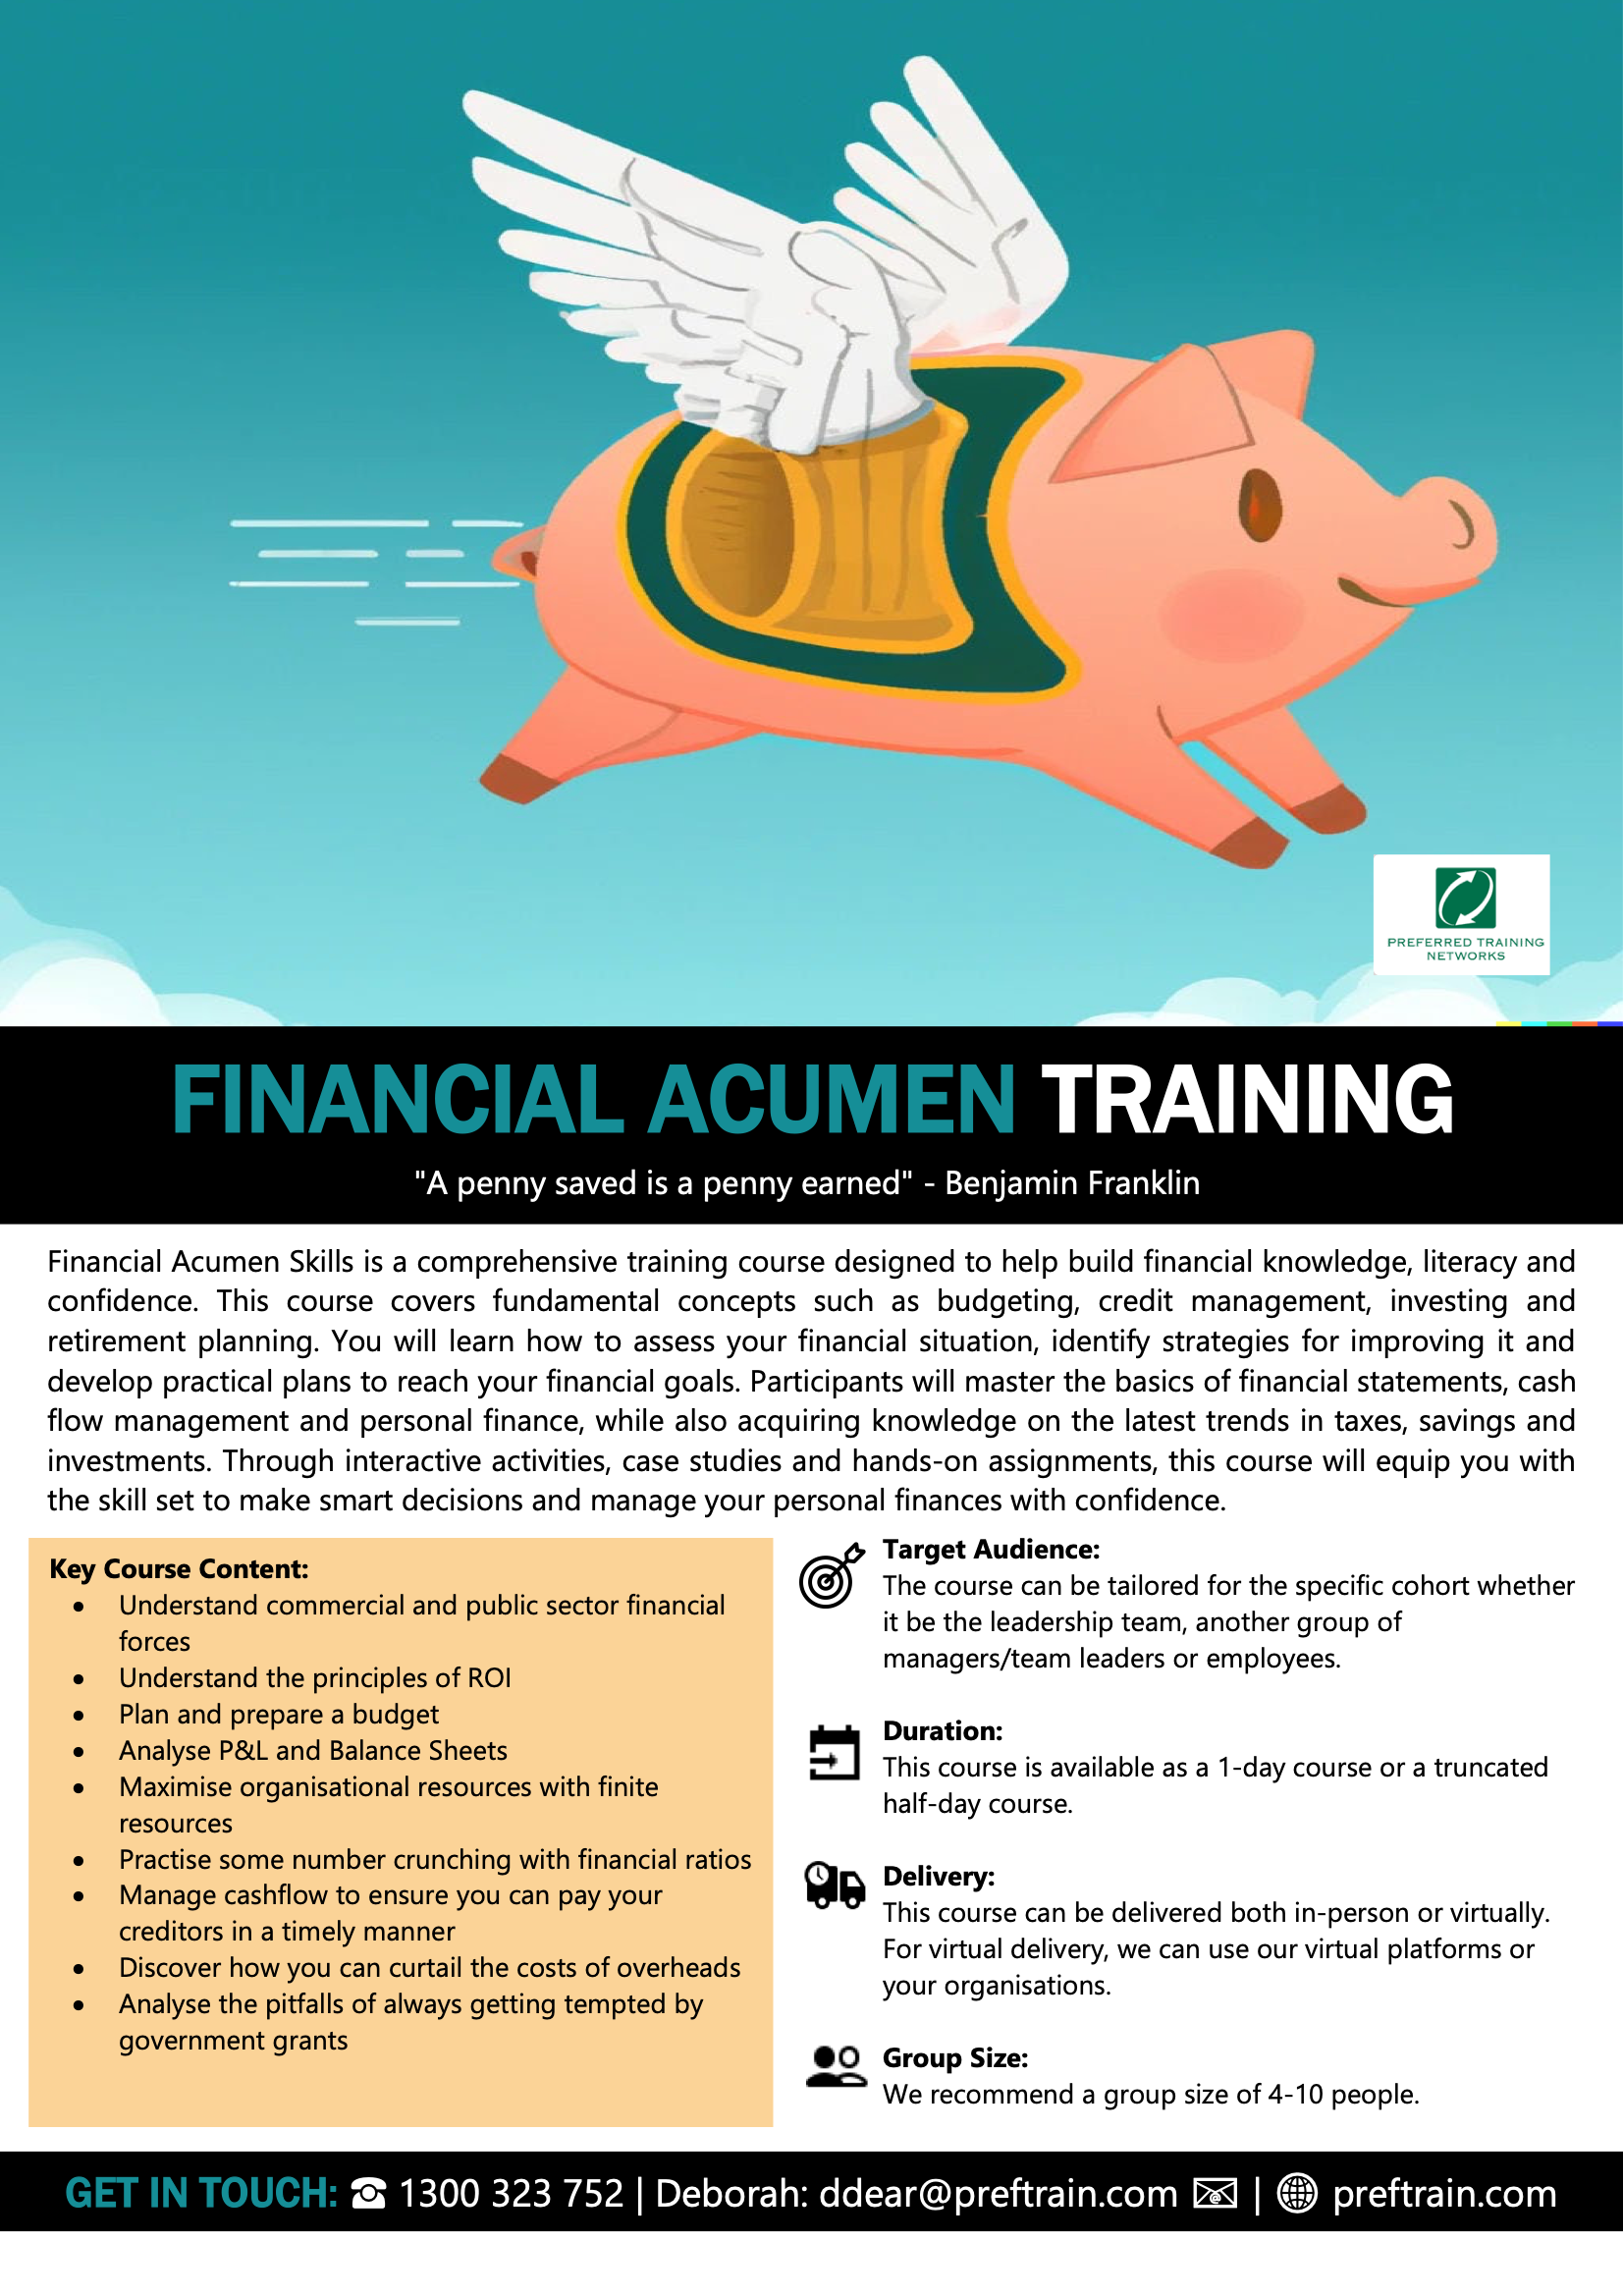 Financial Acumen Training